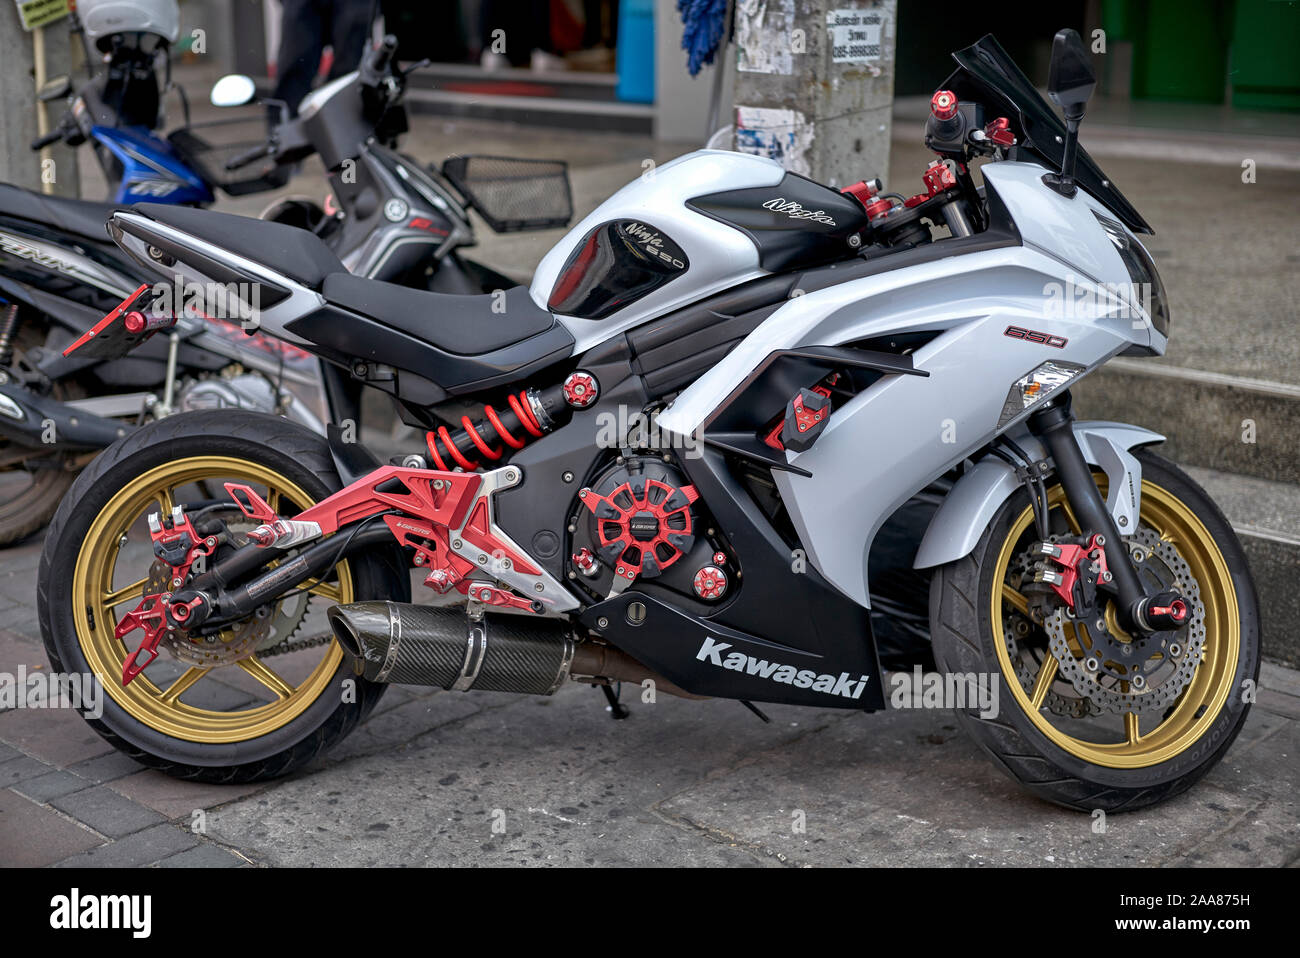 Kawasaki Ninja High Resolution Stock Photography and Images - Alamy